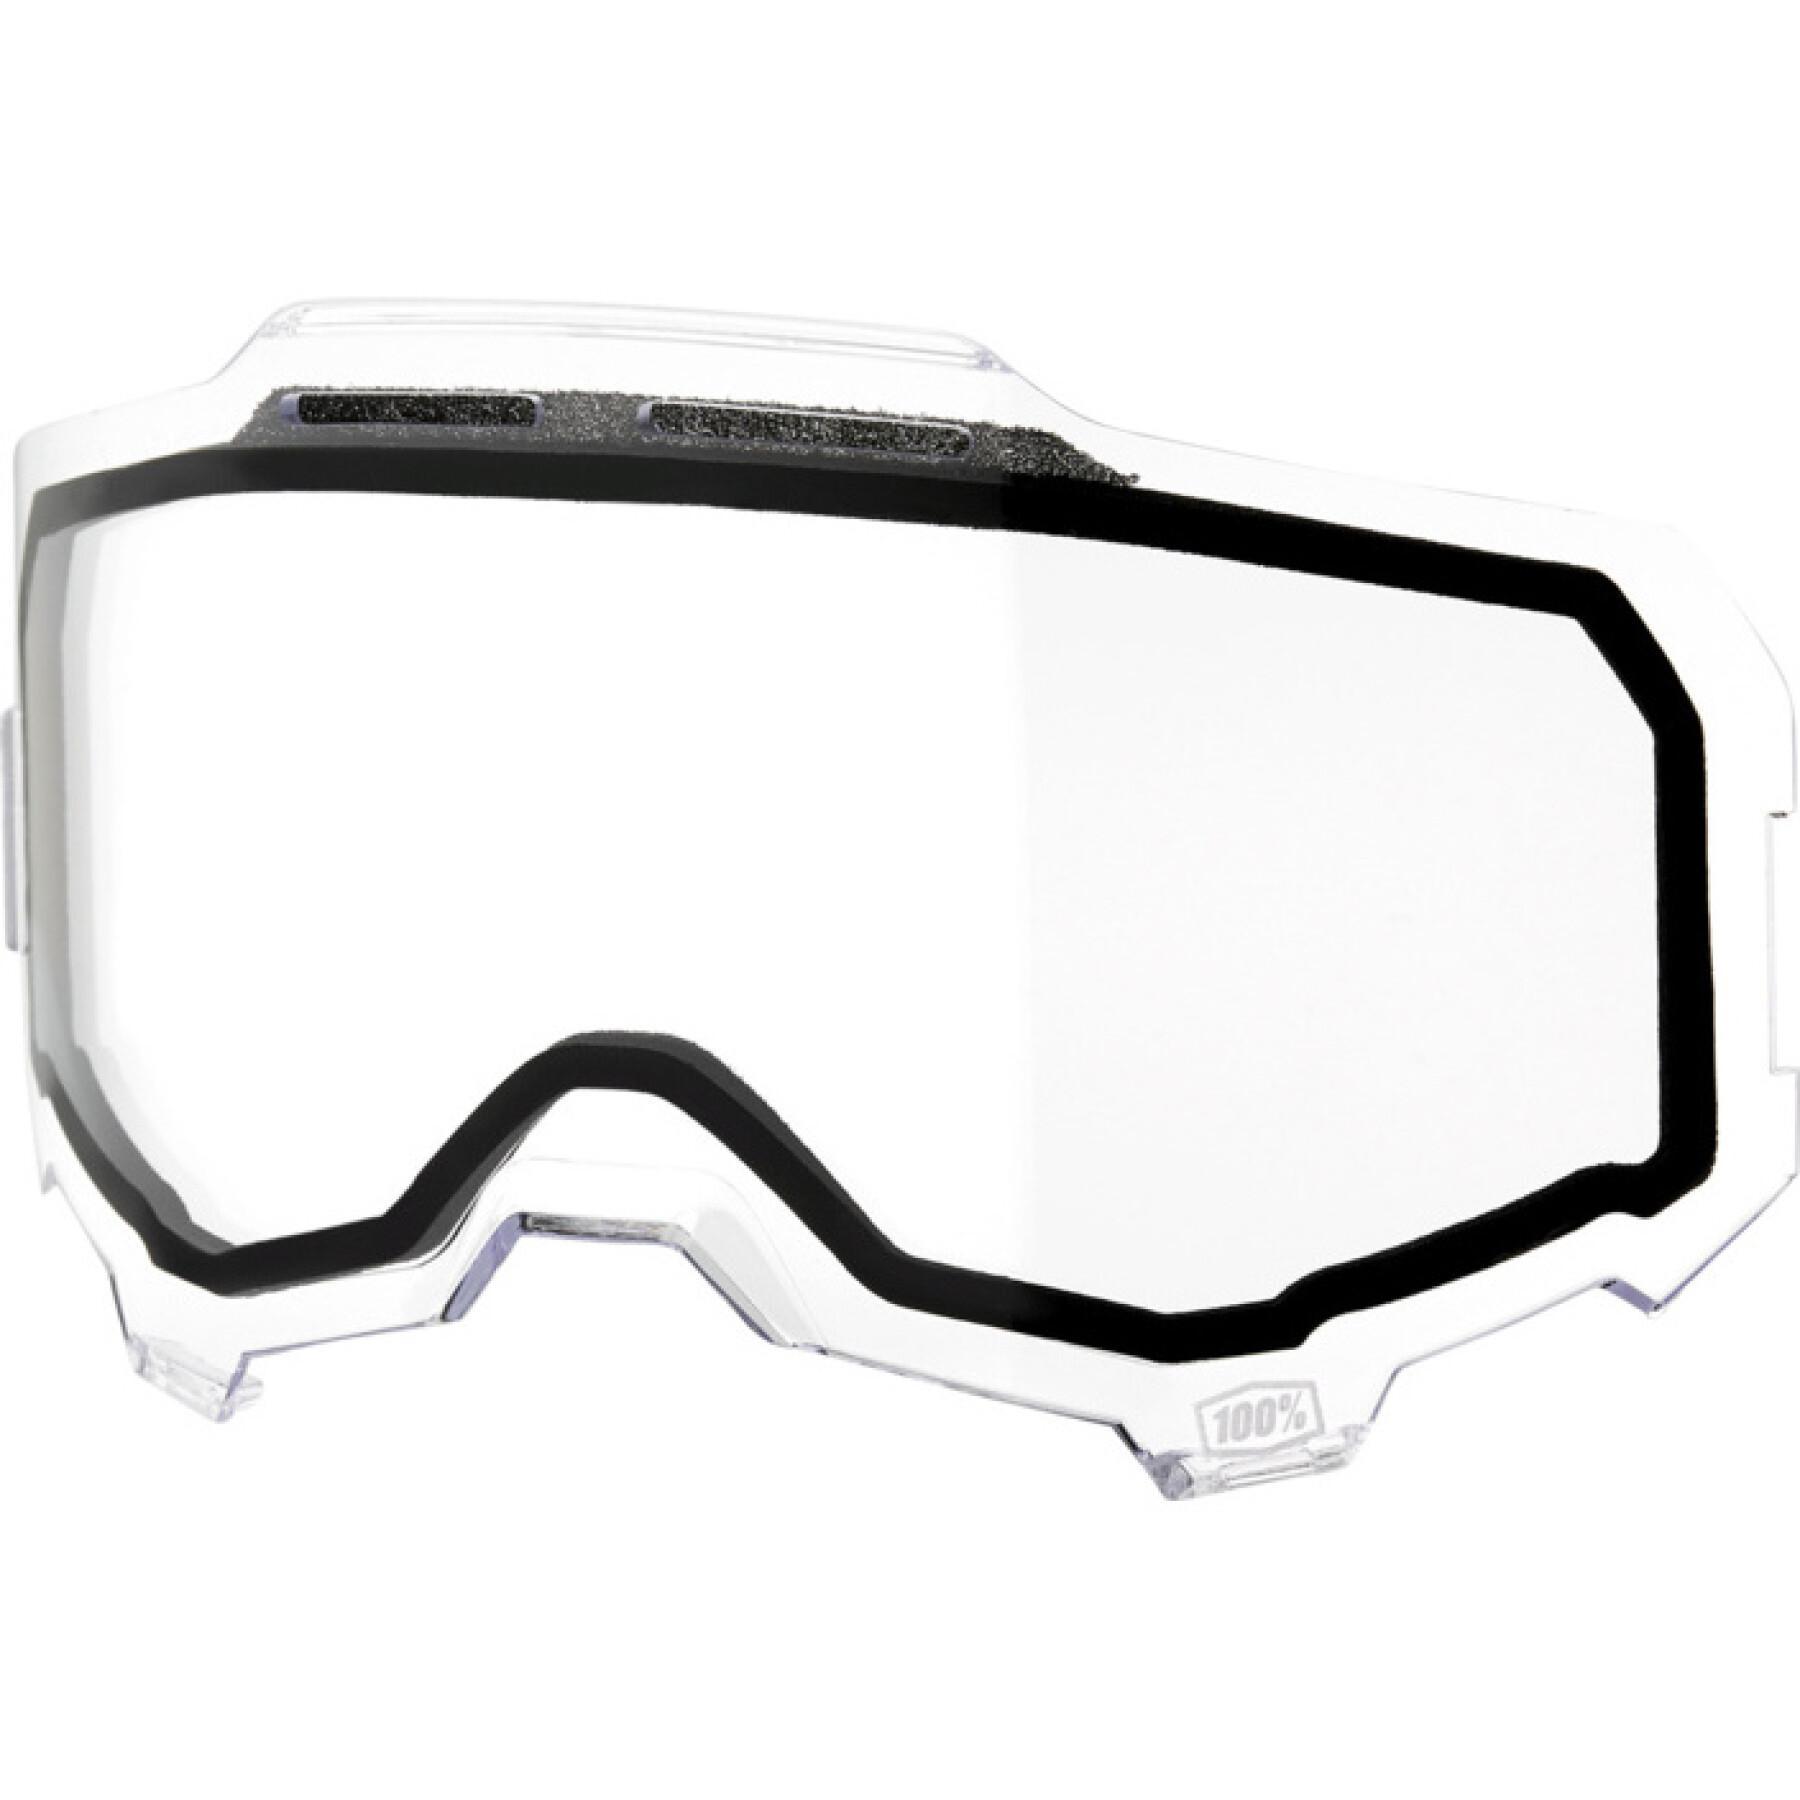 Ecrã de substituição 100% ventilado com vidro duplo para máscara de motociclista Armega